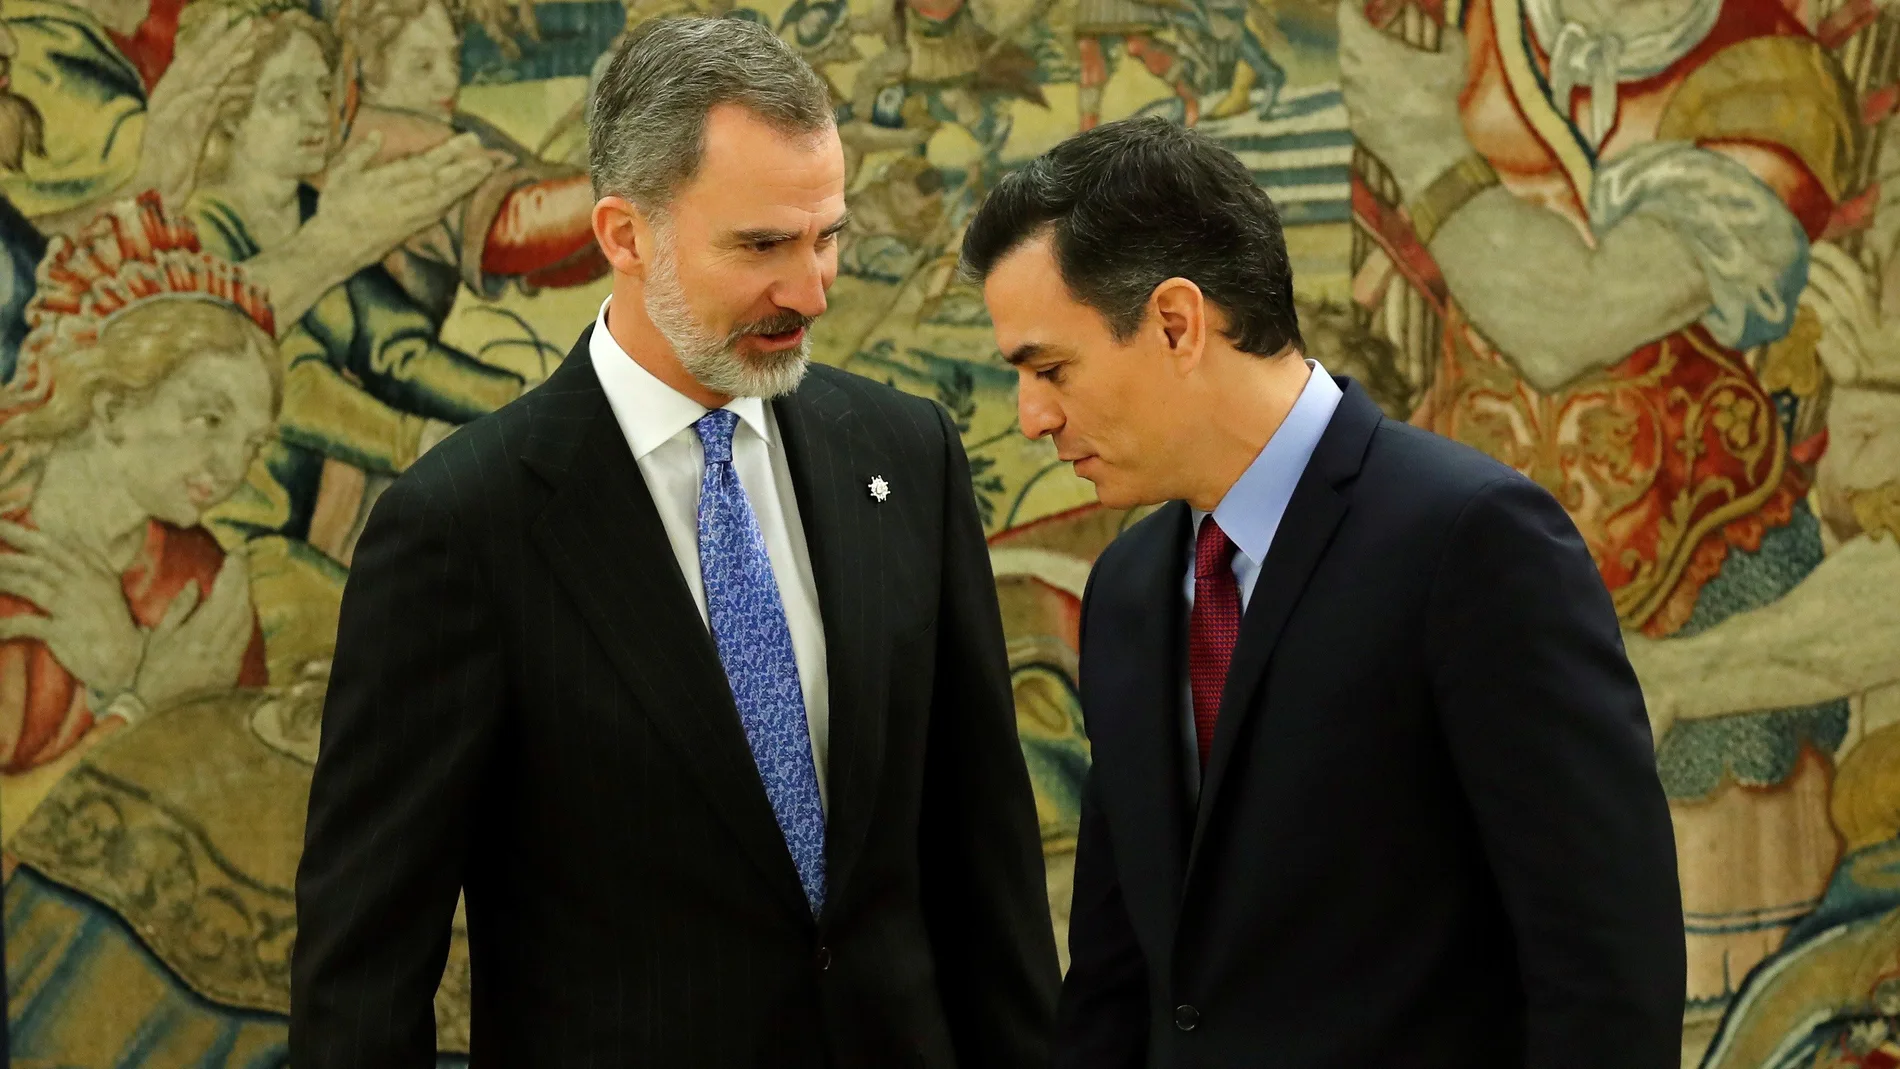 El presidente del Gobierno Pedro Sánchez, promete su cargo ante el rey Felipe VI.